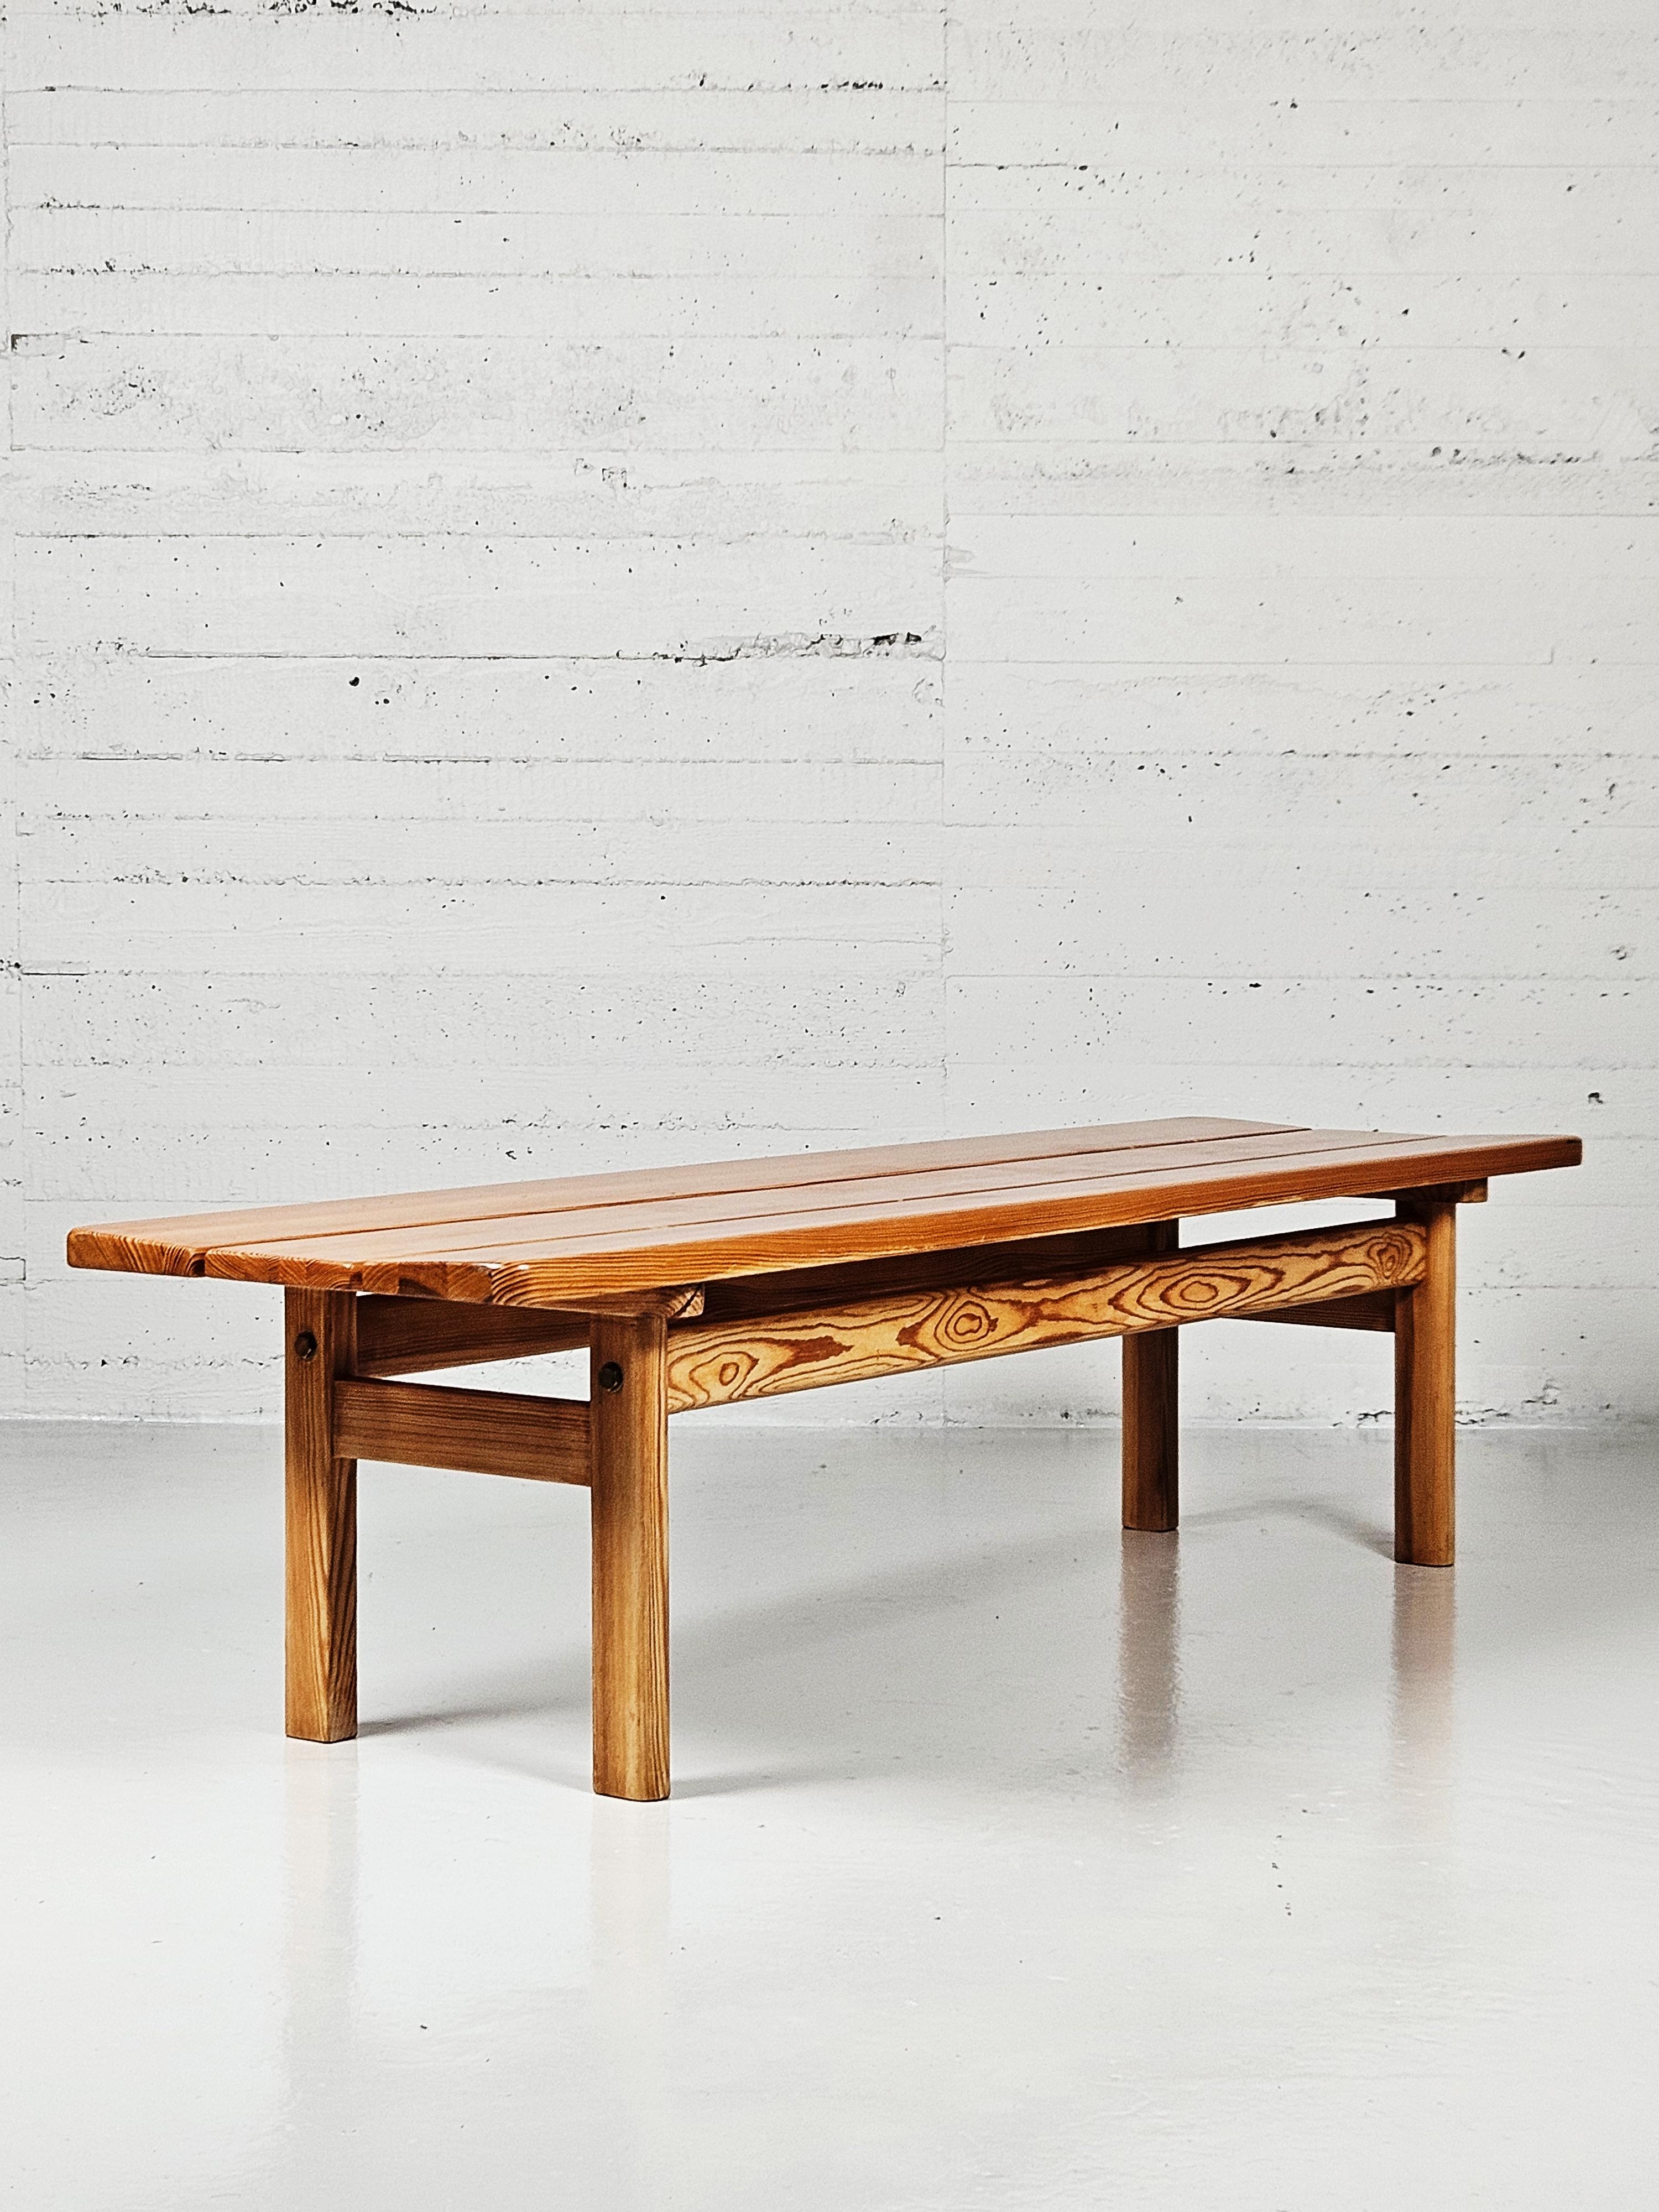 Rare banc conçu par Børge Mogensen dans les années 1960.

En 1961, Mogensen a conçu des meubles en pin destinés à sa propre maison d'été. La série a ensuite été produite par la société suédoise Karl Andersson & söner et a été baptisée